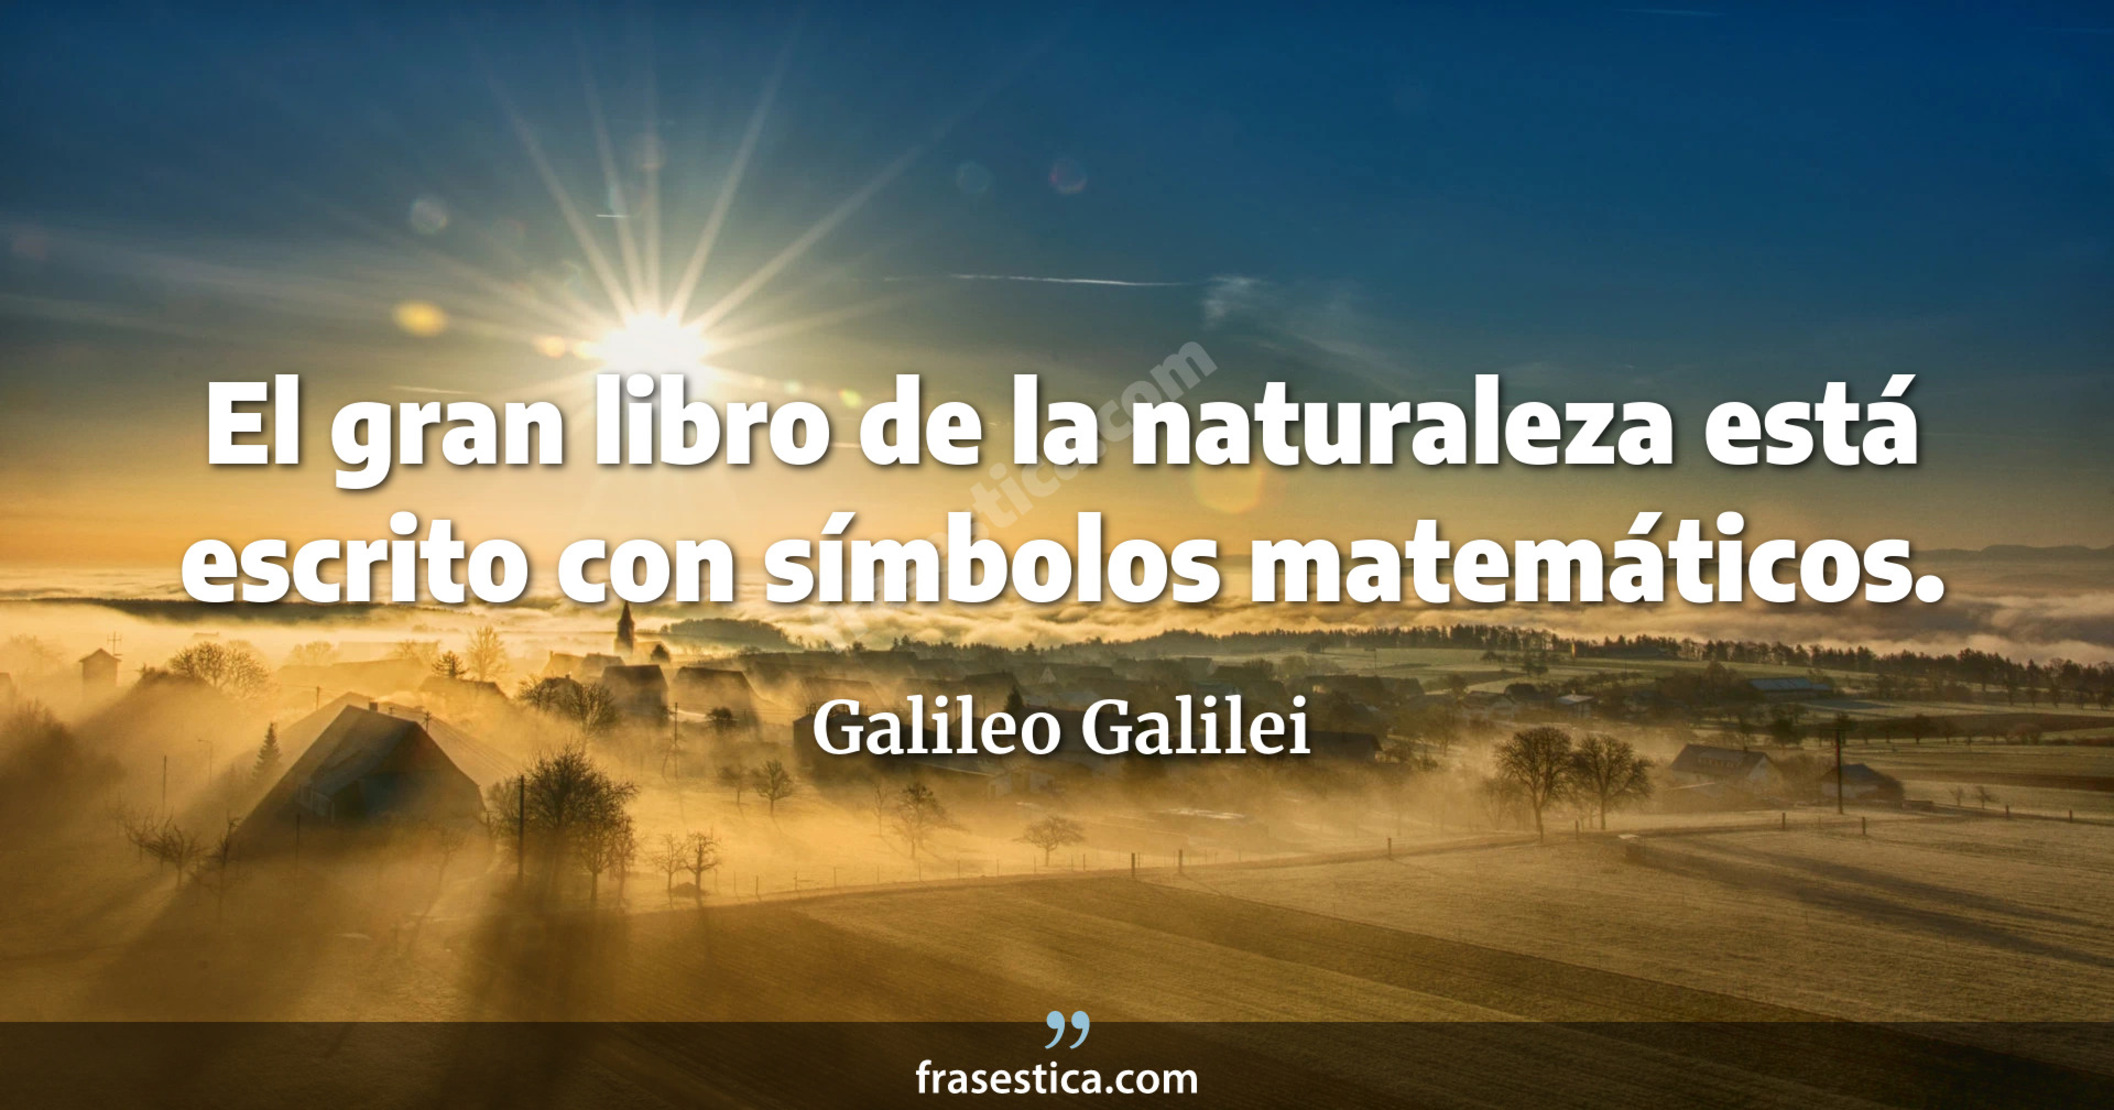 El gran libro de la naturaleza está escrito con símbolos matemáticos. - Galileo Galilei